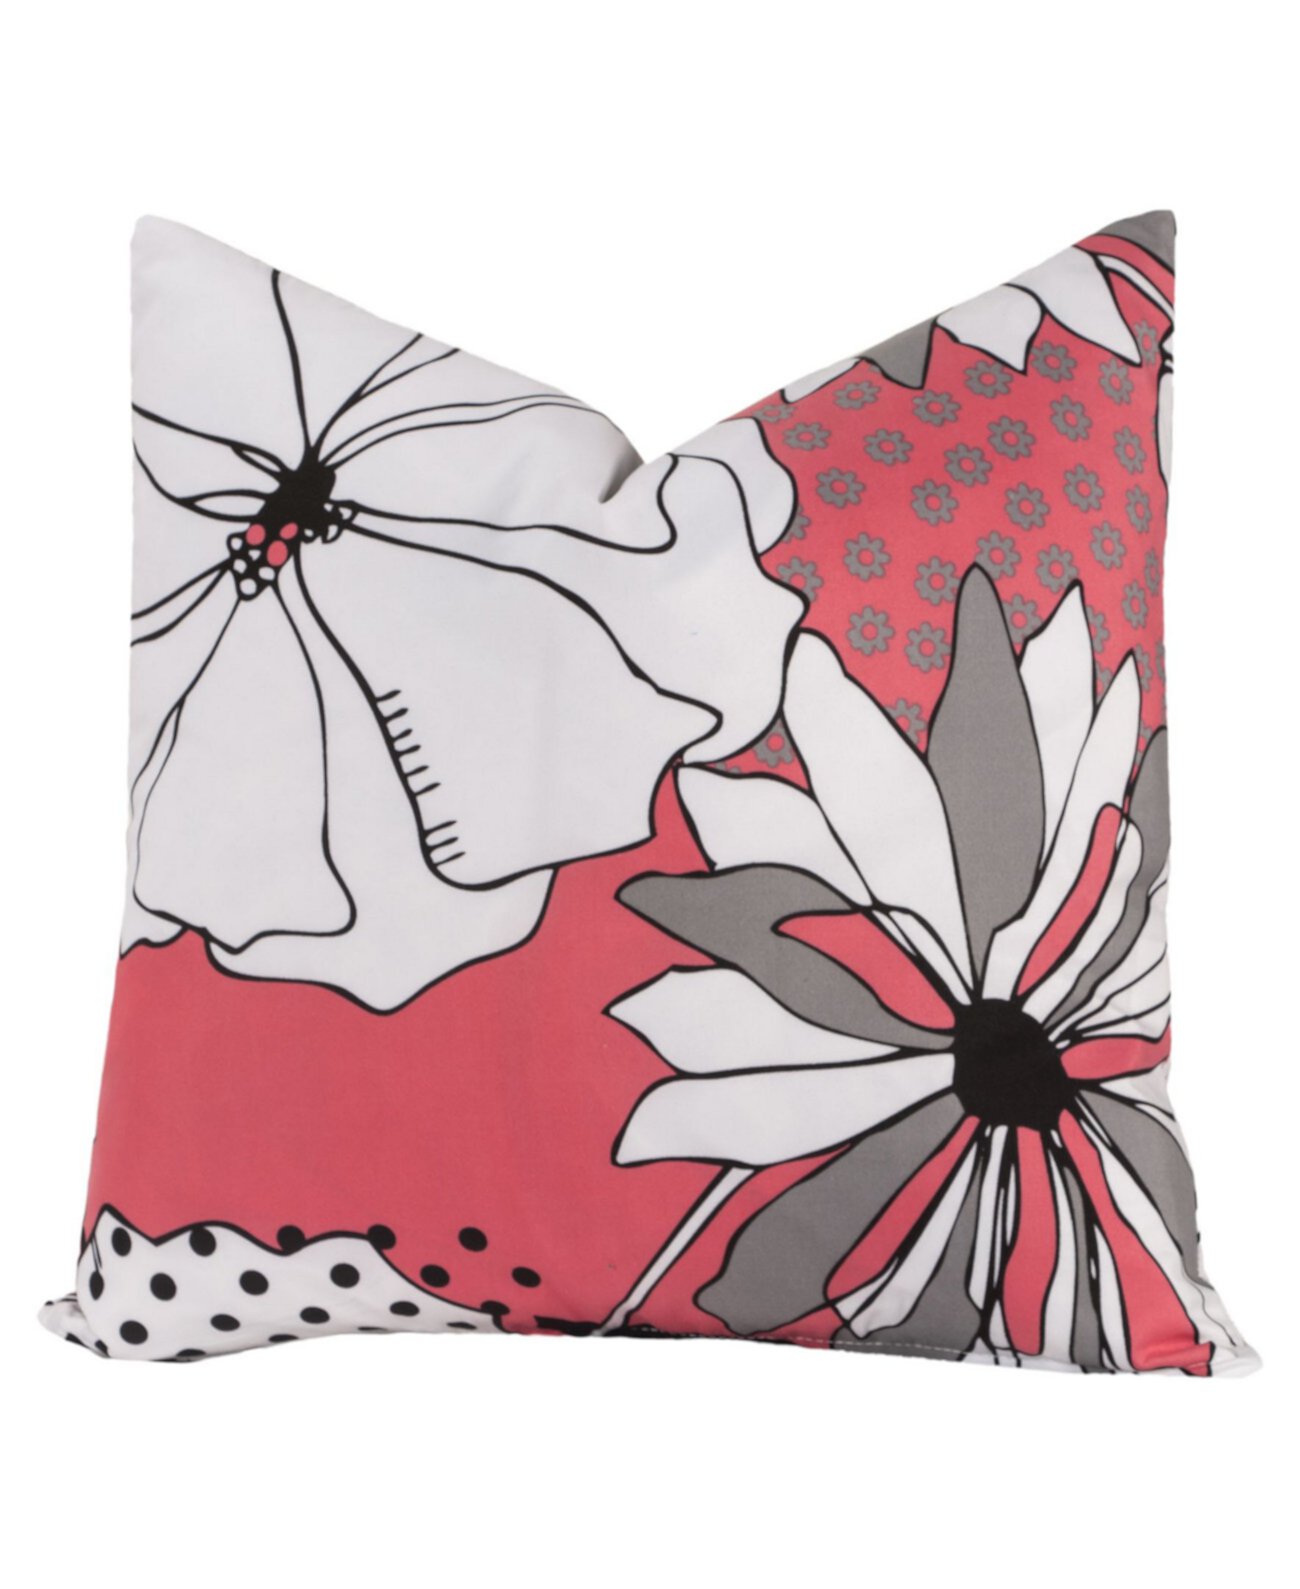 Дизайнерская декоративная подушка с цветочным орнаментом, 20 дюймов Crayola